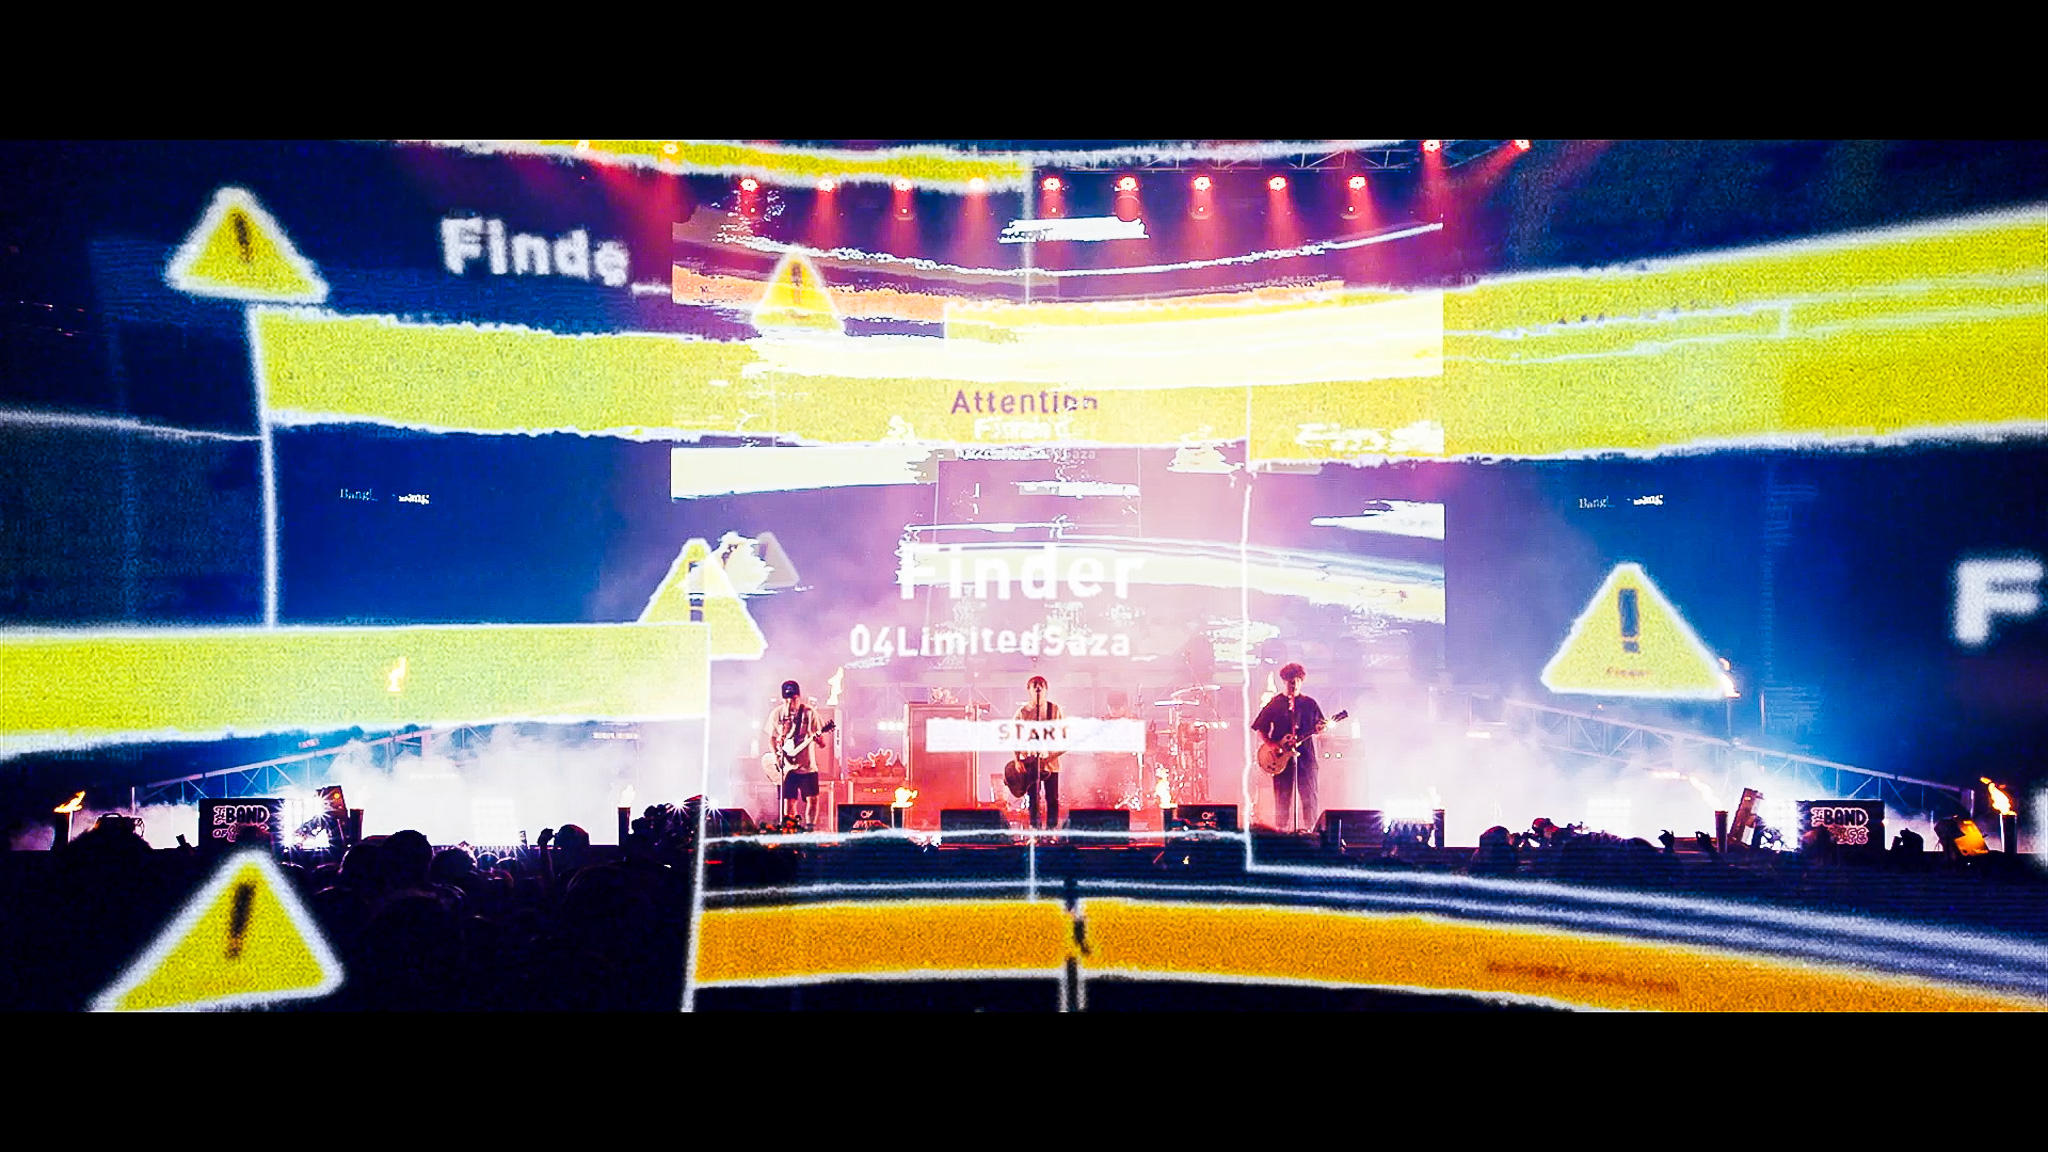 THE BAND OF LIFEより "Finder" のライブ映像公開！